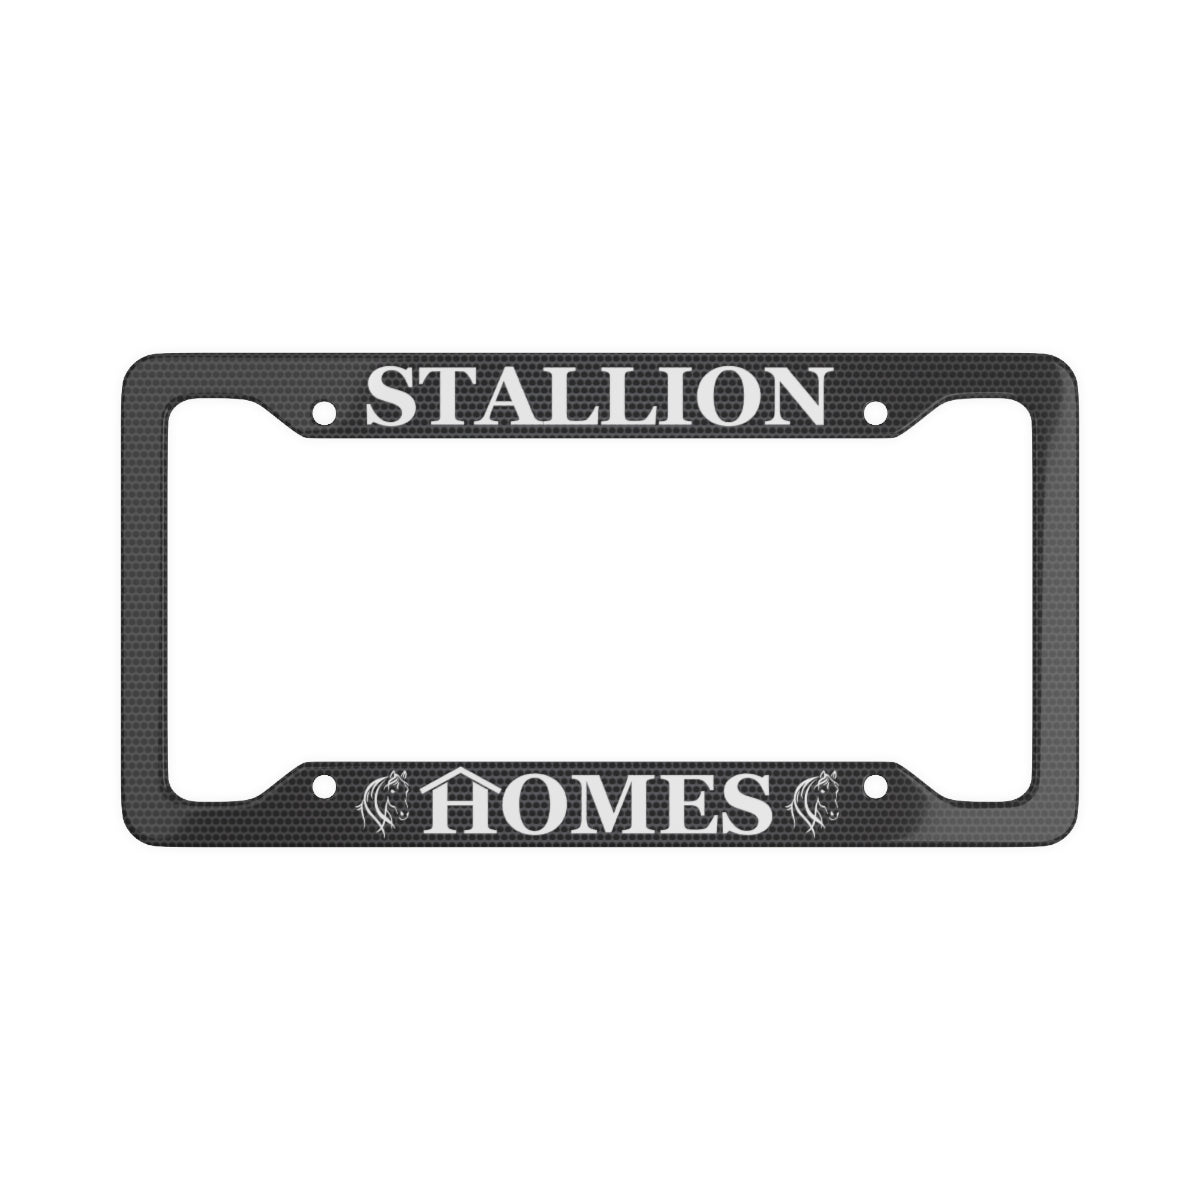 Stallion Homes Black License Plate Frame